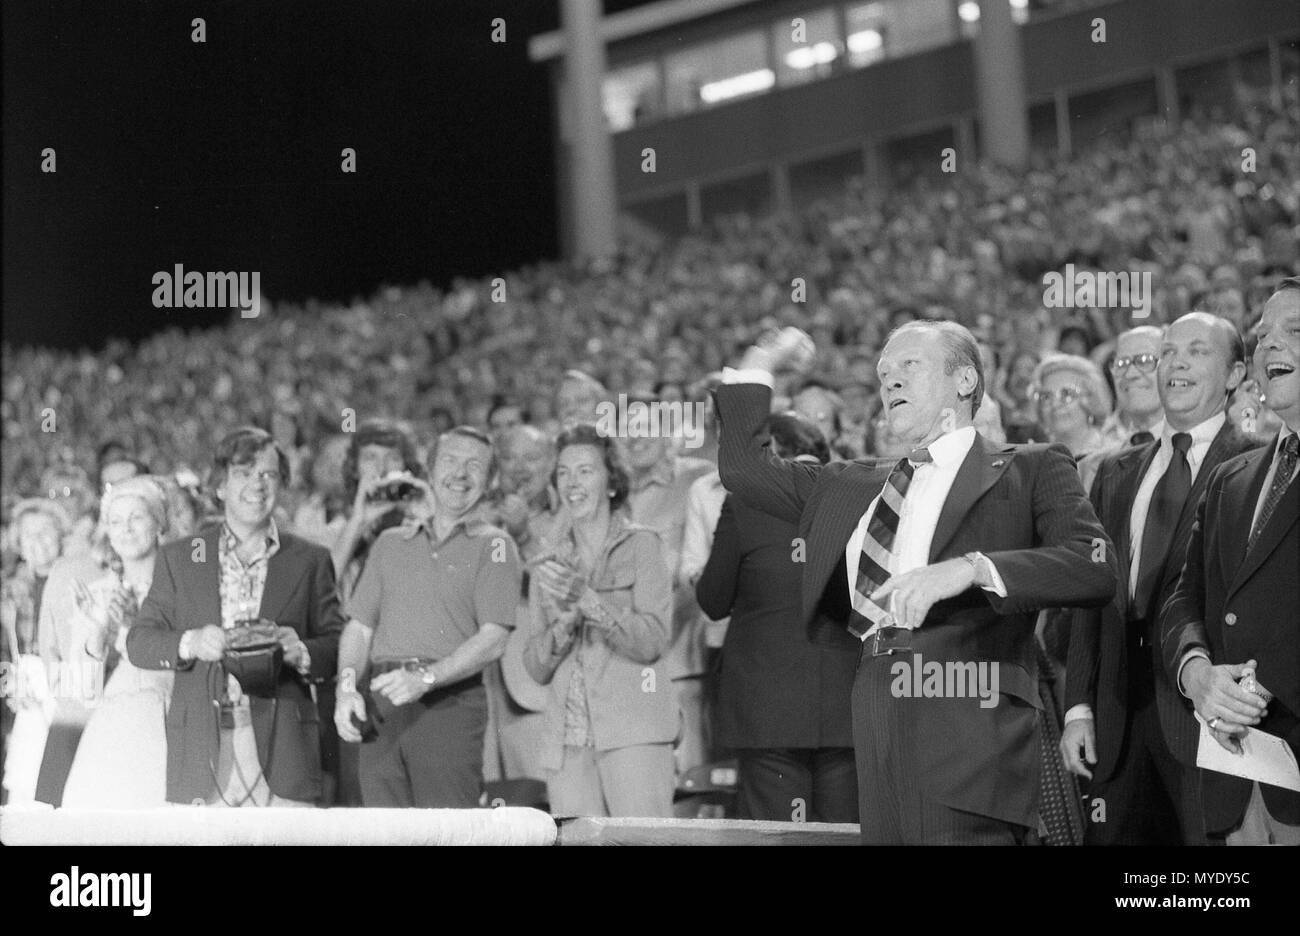 1976, 9 avril - Arlington, Texas - Gerald R. Ford, Brad Corbett, O'Donnell, Dan O'Brien, le sénateur John Tower (R-TX), le Service secret, l'auditoire - Ford lance en premier pitch - Voyage à New York- Assistant à Texas Rangers v Twins du Minnesota de la journée d'ouverture d'un match de baseball Banque D'Images